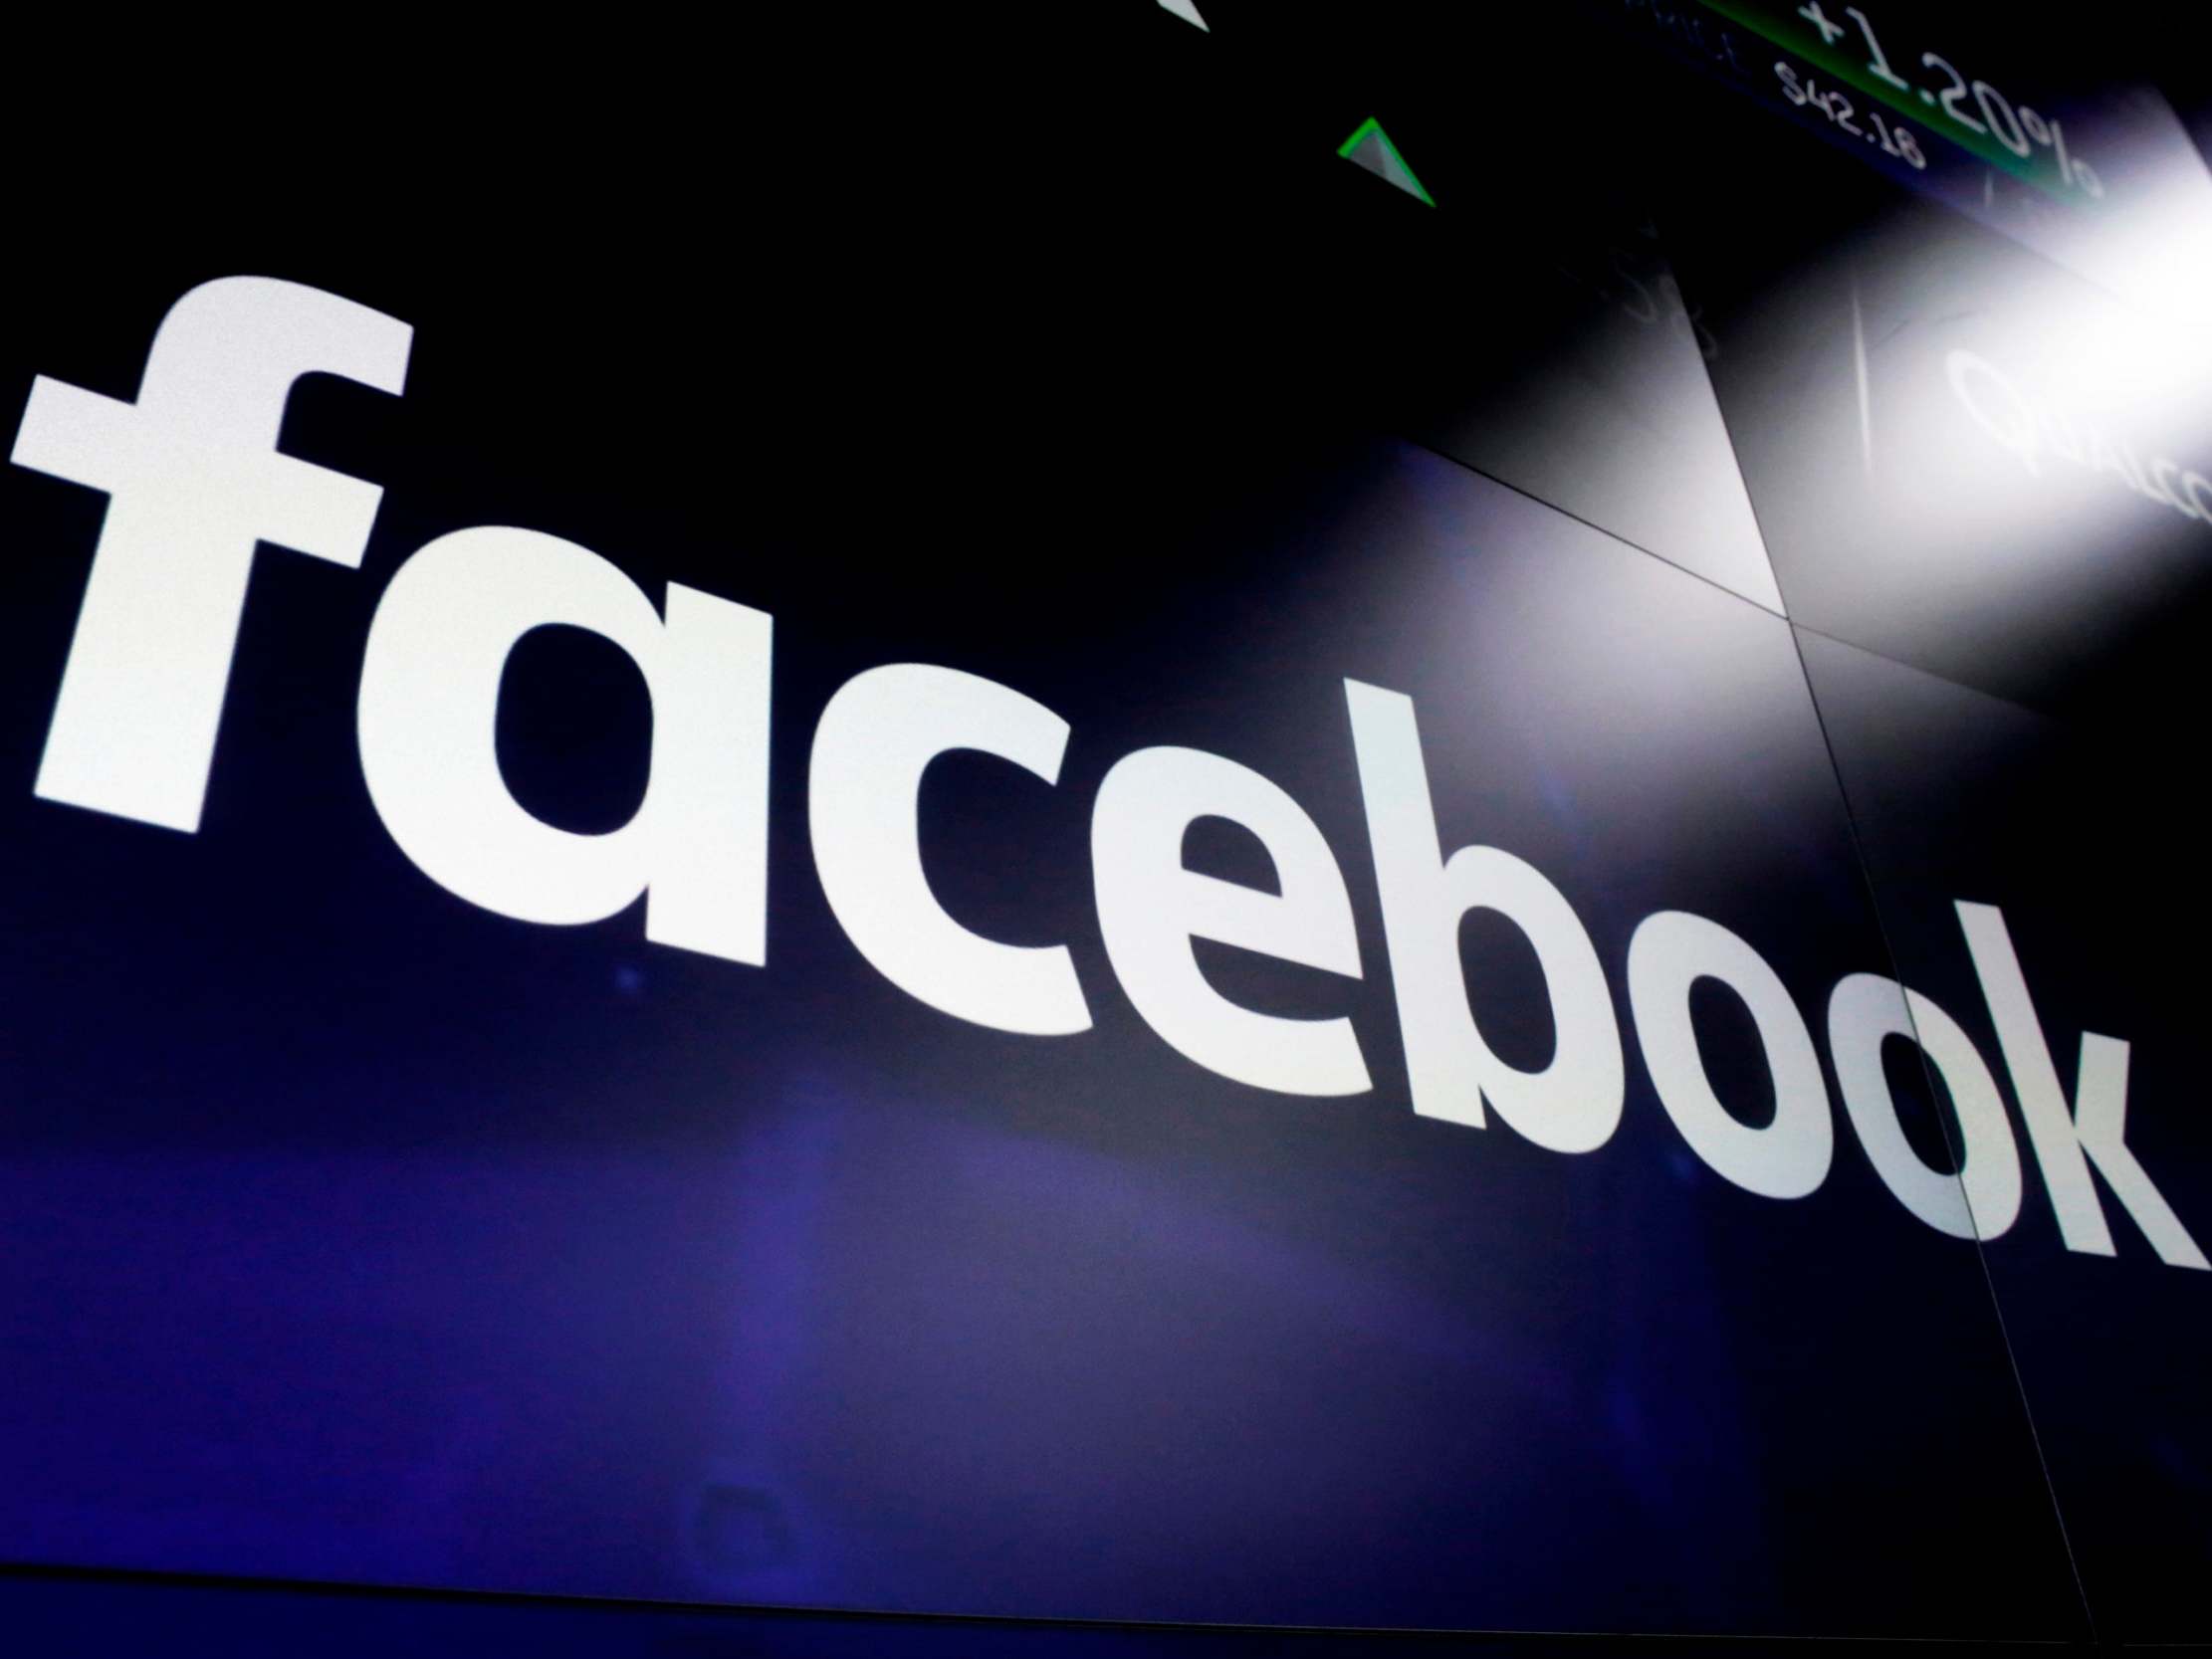 Facebook is seen as a key election battleground